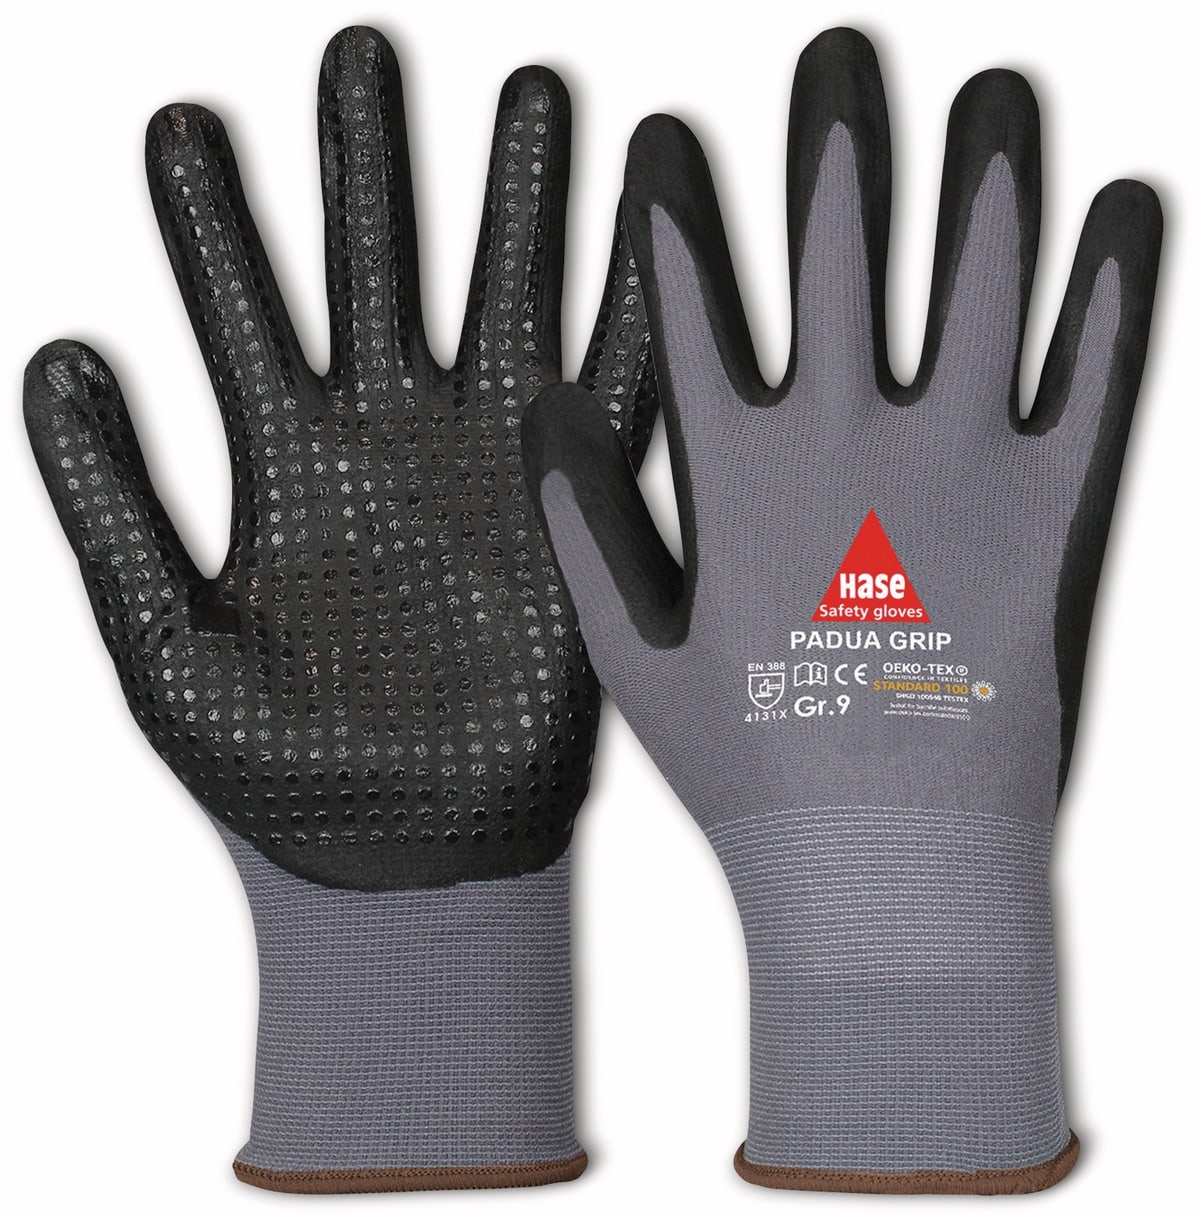 HASE SAFETY GLOVES Arbeitshandschuhe mit Noppen, Padua Grip, EN 388, EN 420, Größe 10, grau/schwarz von Hase Safety gloves